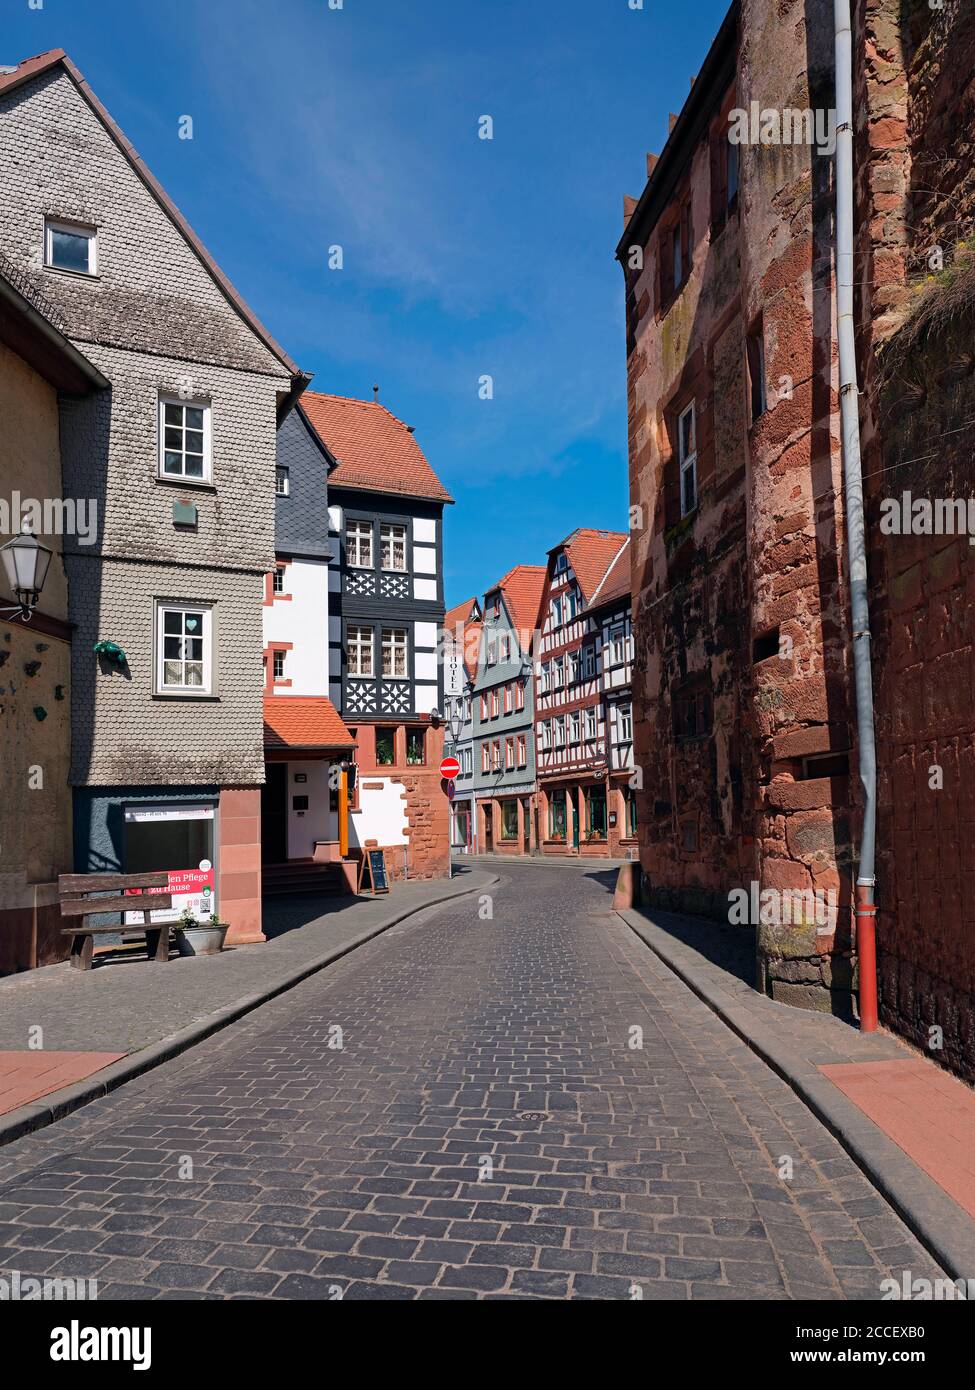 Altstadt, Büdingen, Hessen, Germany Stock Photo